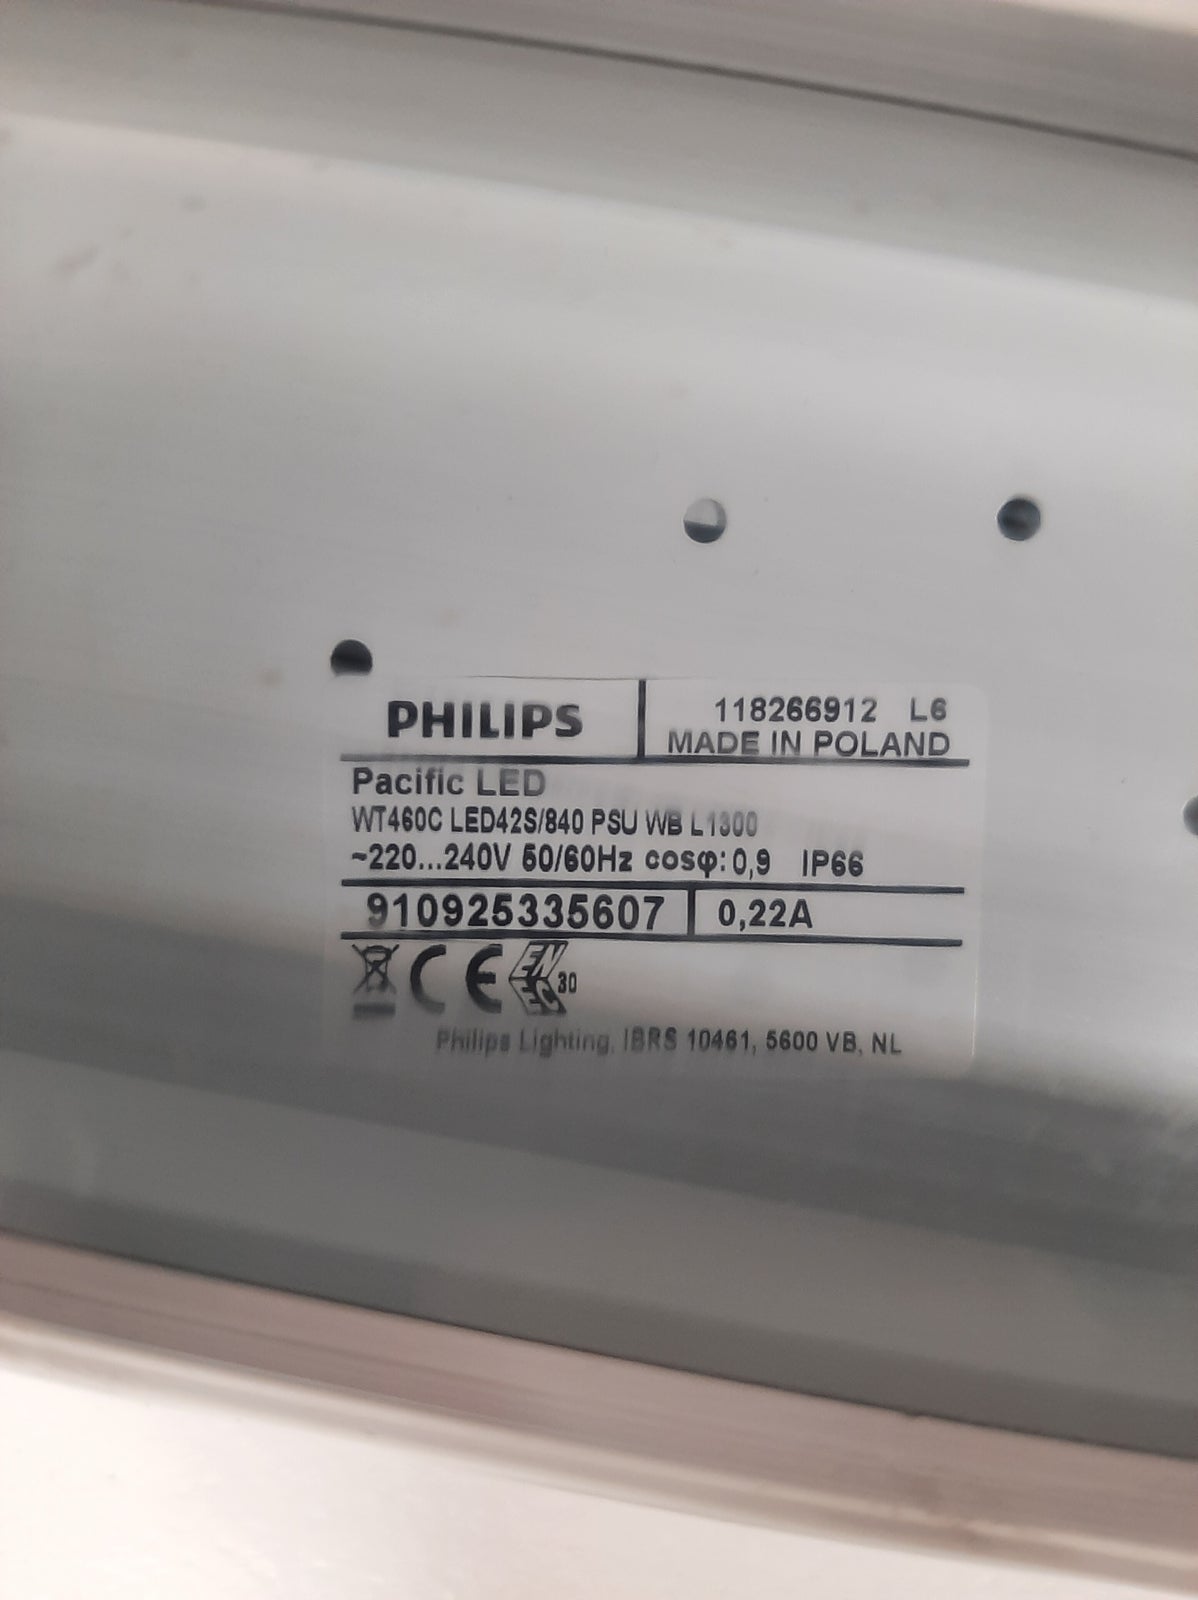 Philips pacific led wt480c industriarmatur, 130...